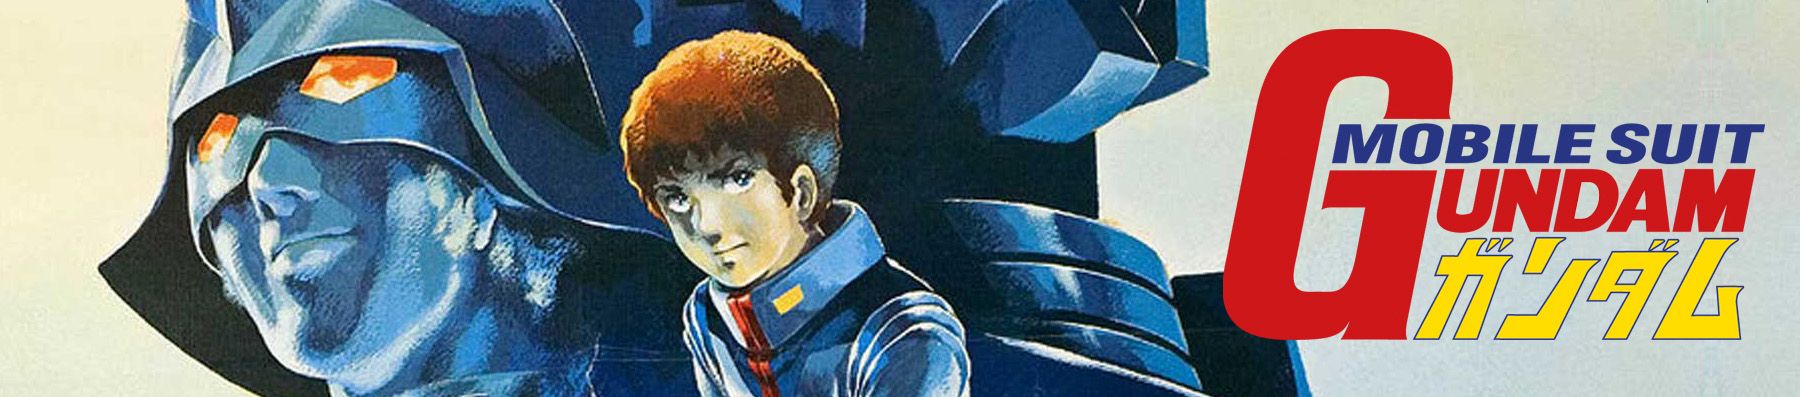 Dossier manga - Gundam : L'histoire des productions - Partie 1 - La première série et ses films